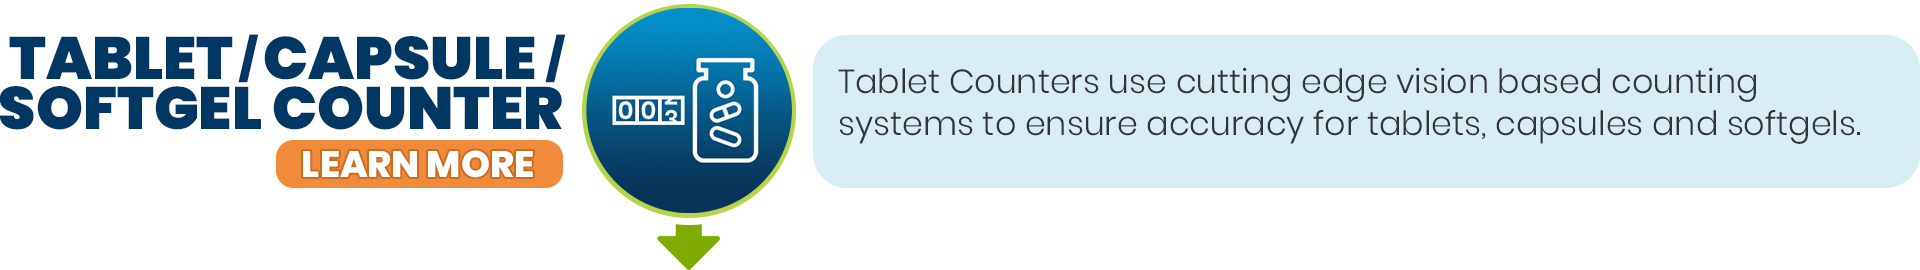 Tablet-Capsule-Softgel Counter - Block